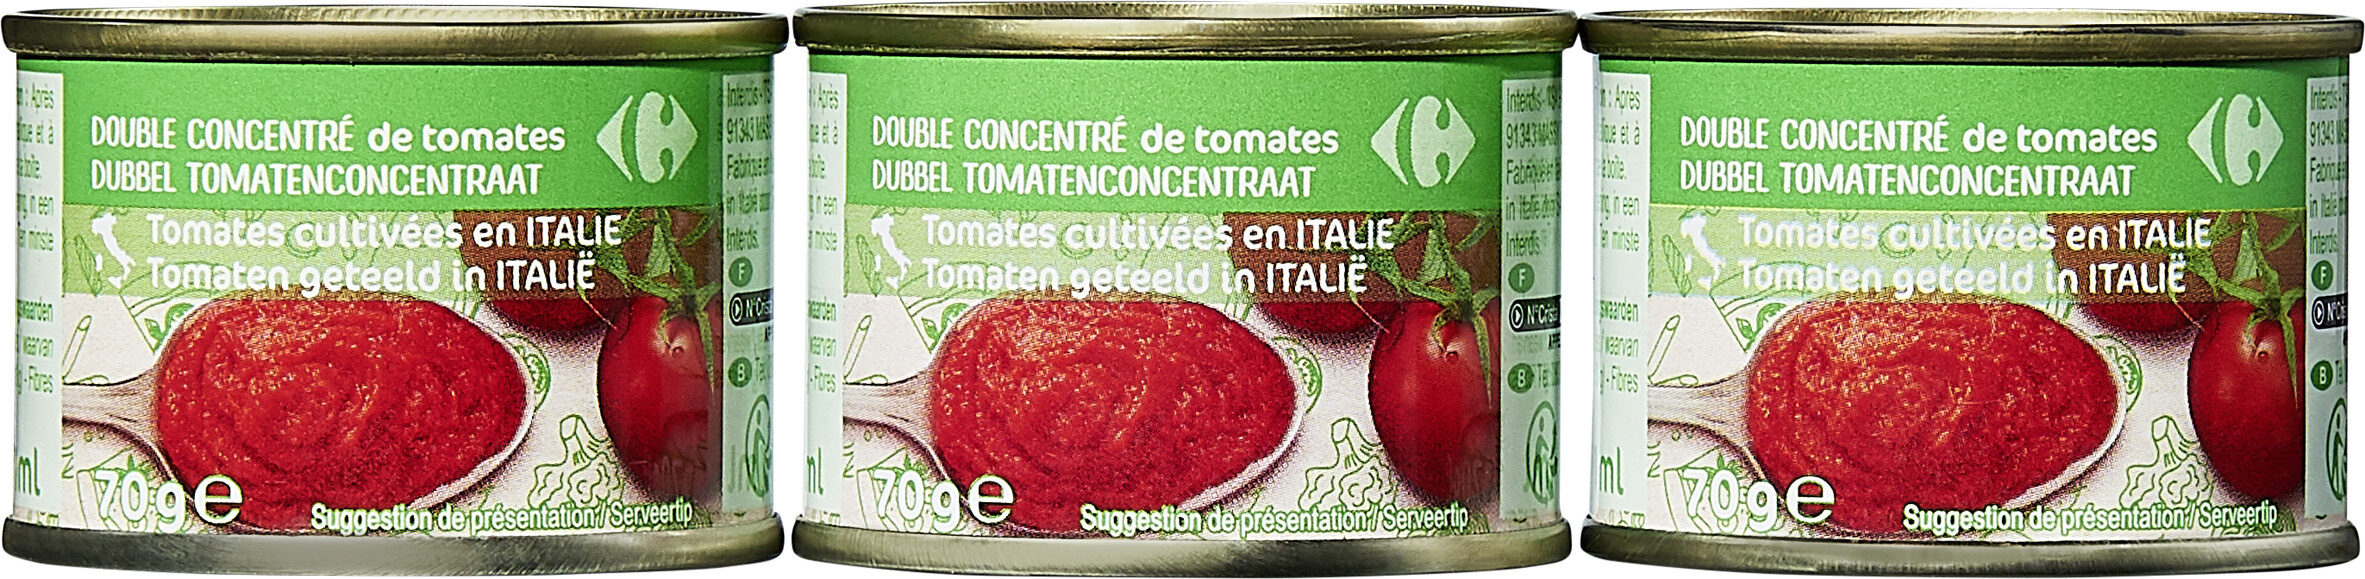 Double concentré de tomates - Produit